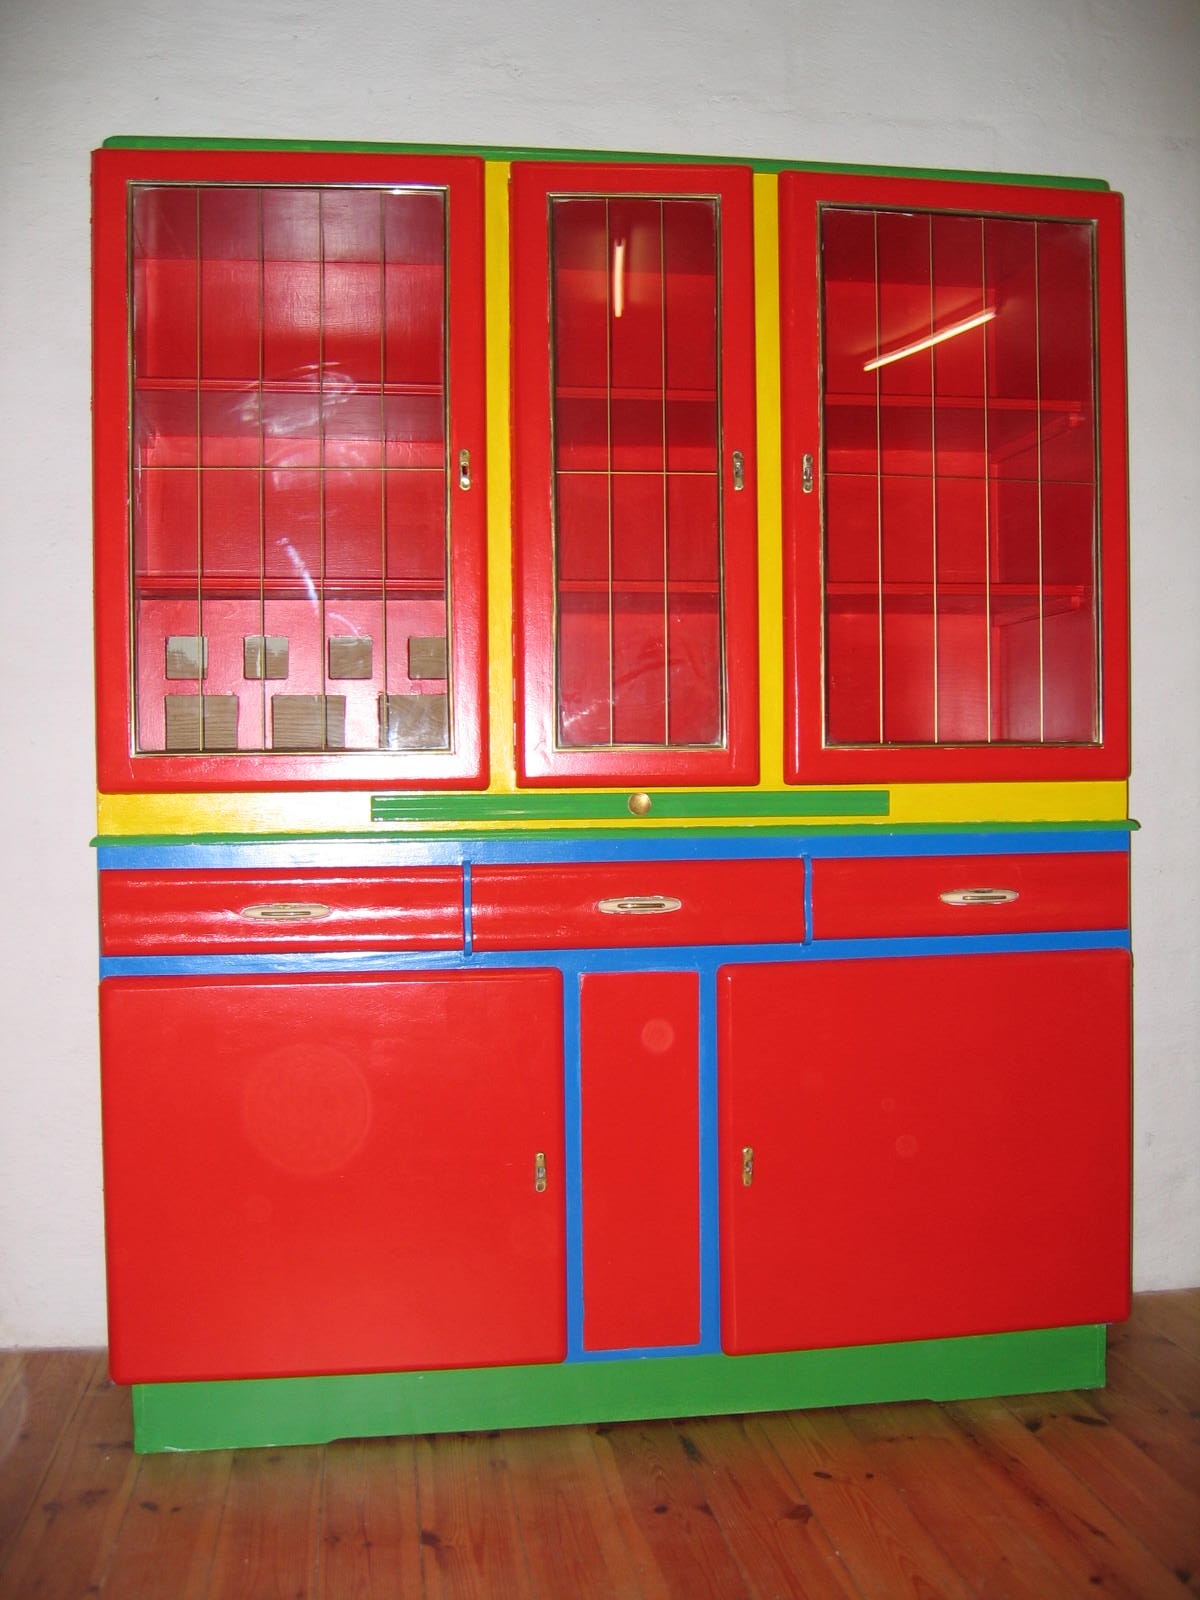 Altes Küchenbuffet in Rot mit Farbeffekten